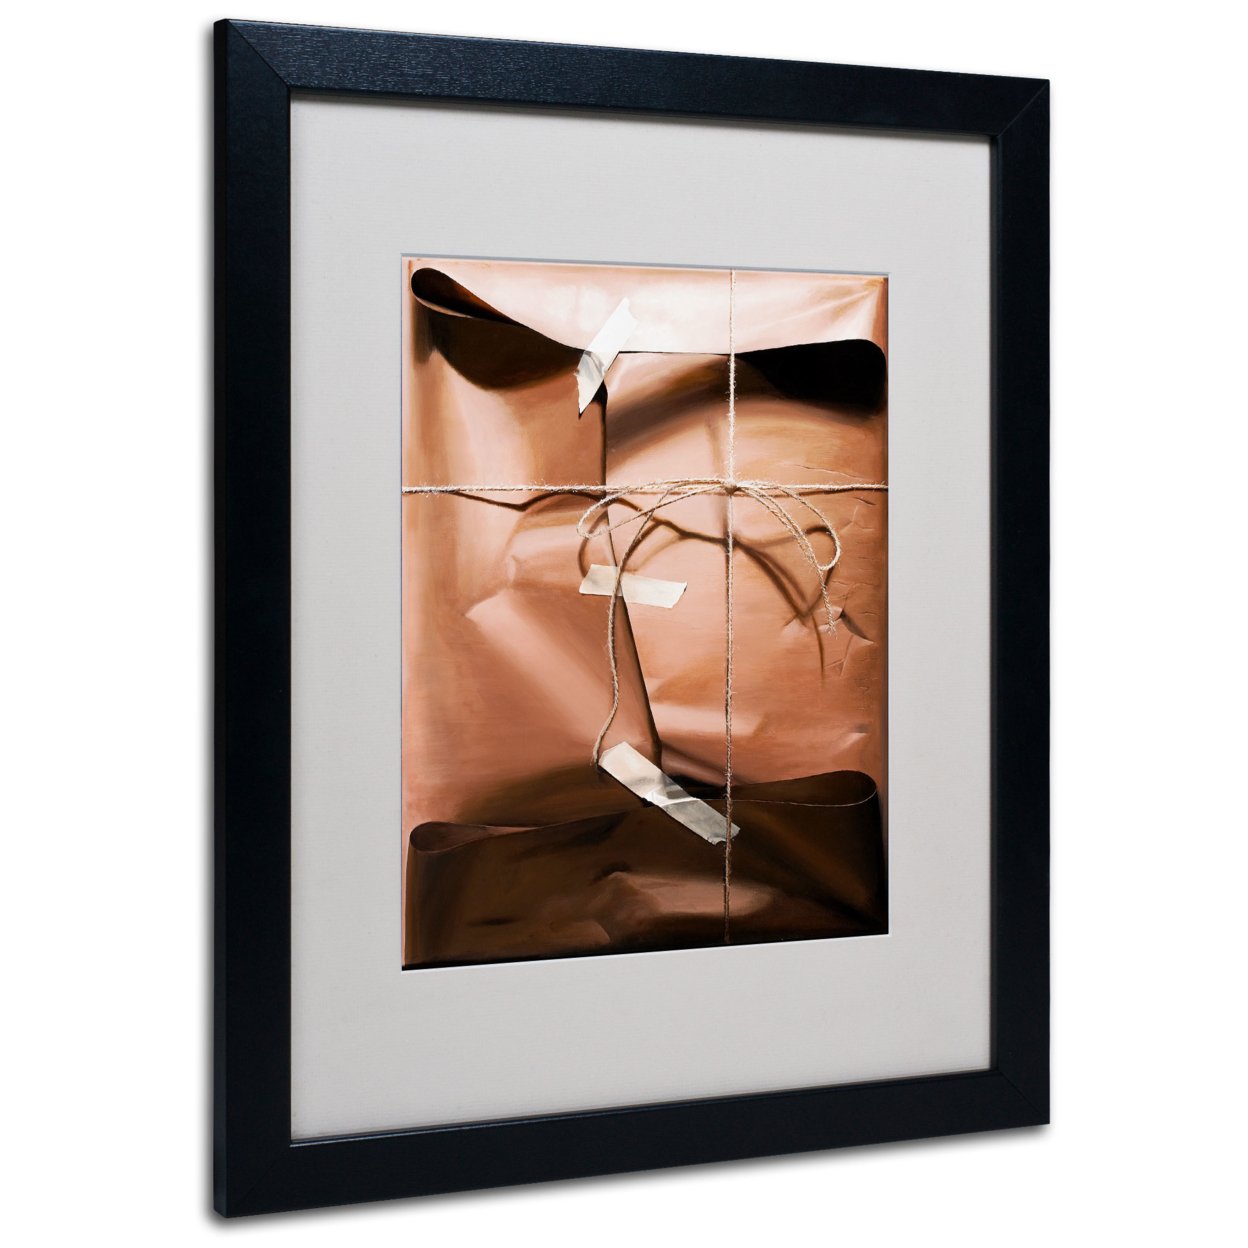 Roderick Stevens 'Wrap' Black Wooden Framed Art 18 X 22 Inches